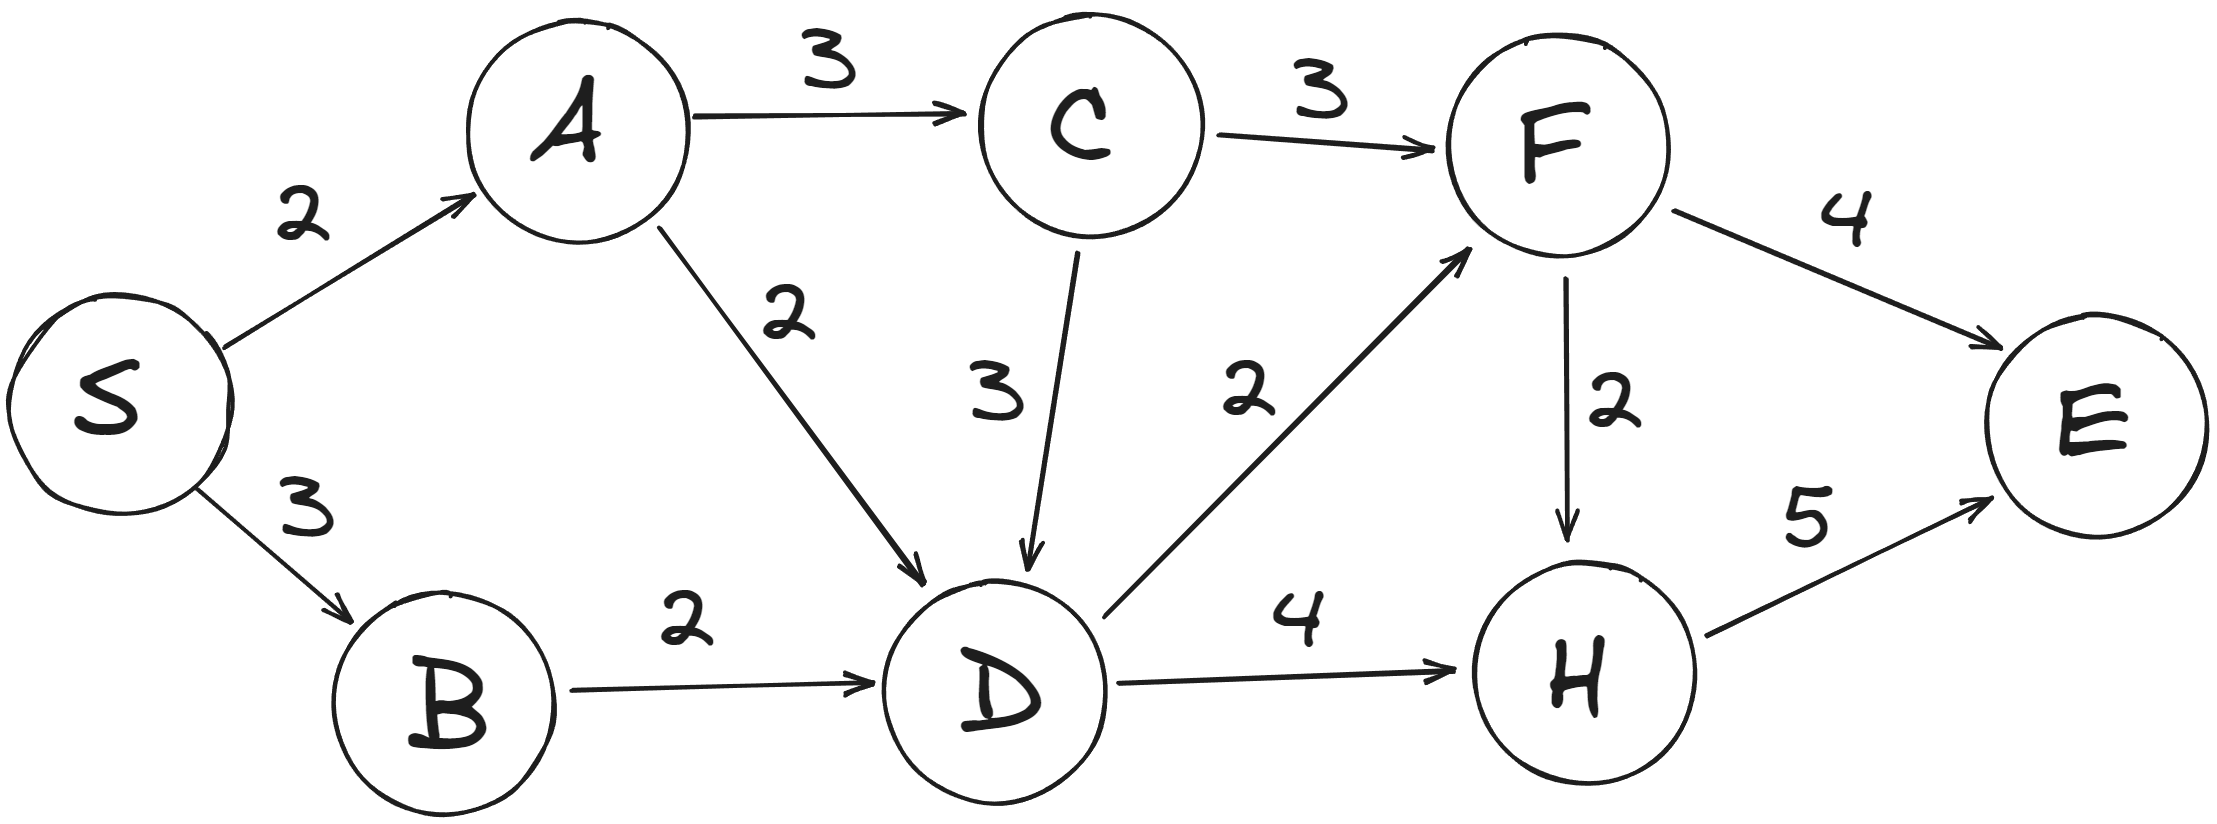  Пример ориентированного, взвешенного графа